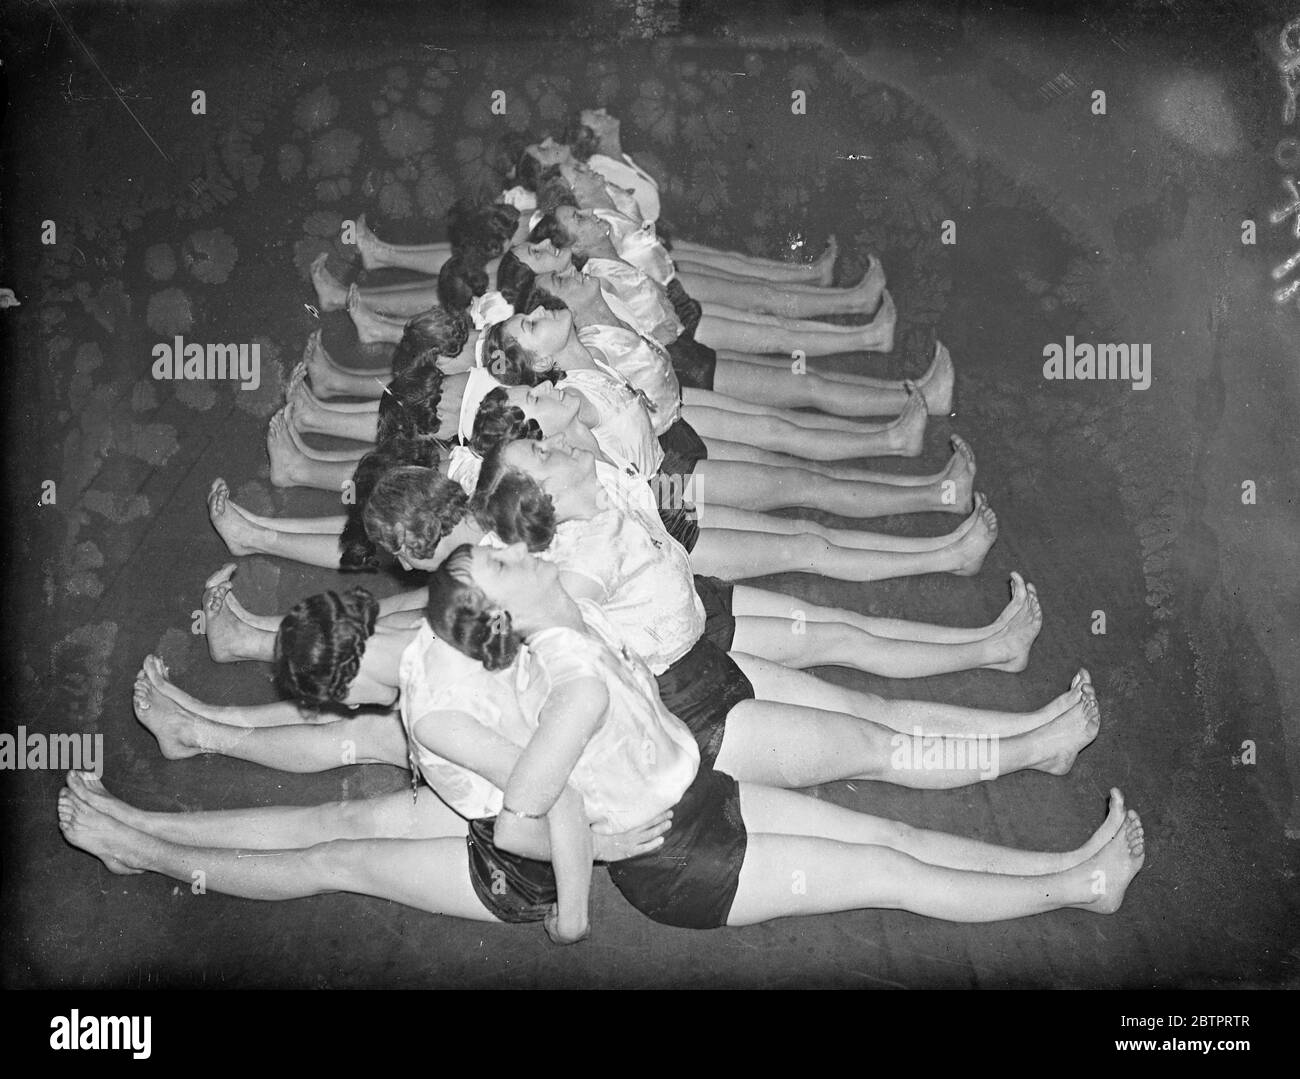 Railway Mädchen halten fit. Hundert Arbeiterinnen der Great Western Railway besuchen regelmäßig Kurse im Zusammenhang mit der "Keep Fit"-Bewegung in der Stanley Street , Industrie, Paddington, London. Foto zeigt, die ' Keep Fit' Mädchen lief eine der Übungen. 27. November 1937 Stockfoto